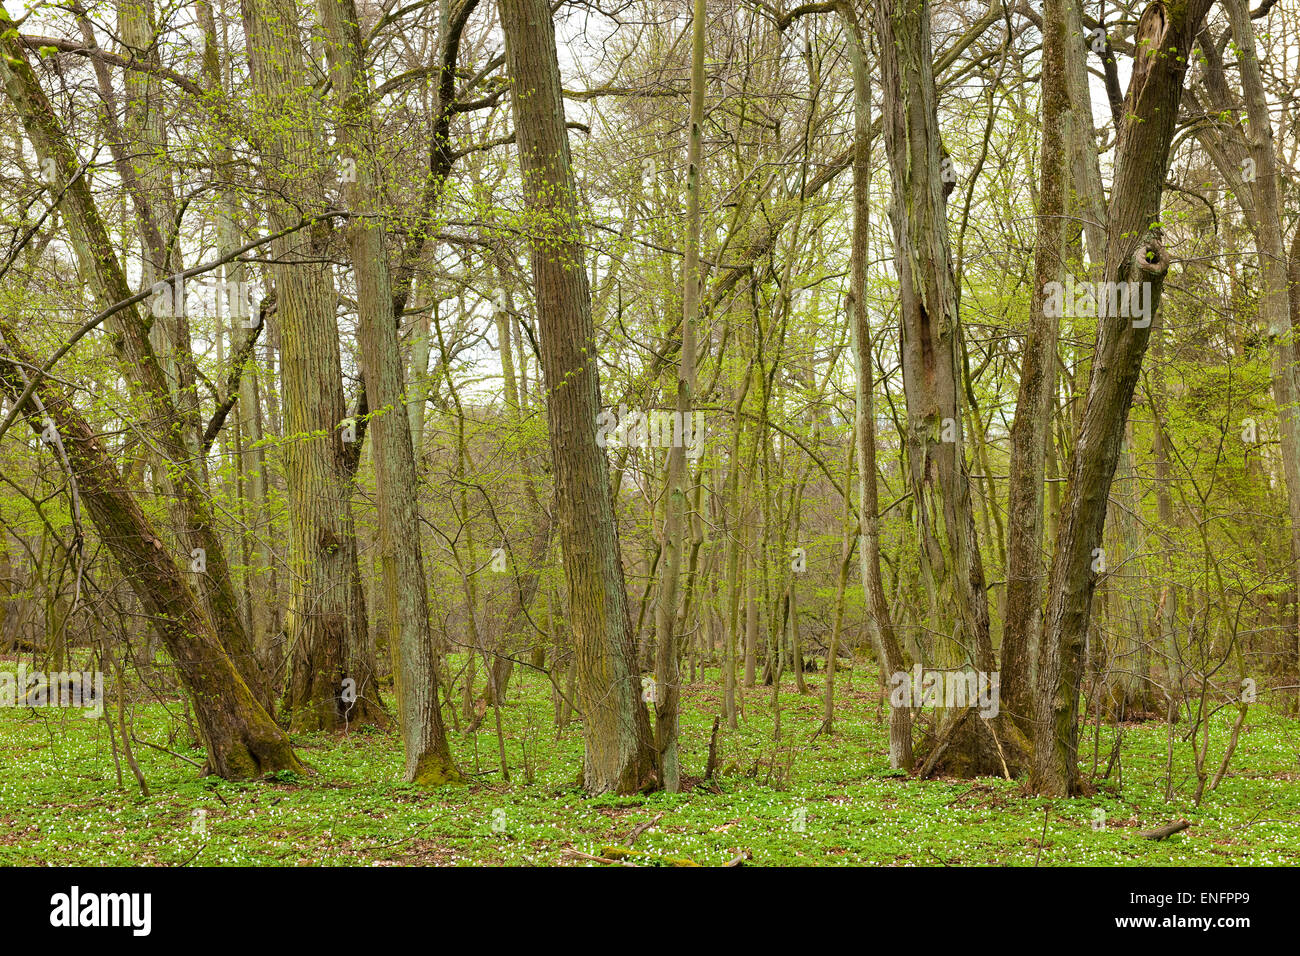 Plus grande forêt de chaux à petites feuilles en Europe centrale (Tilia cordata), Colbitzer Lindenwald réserve naturelle, Saxe-Anhalt, Allemagne Banque D'Images